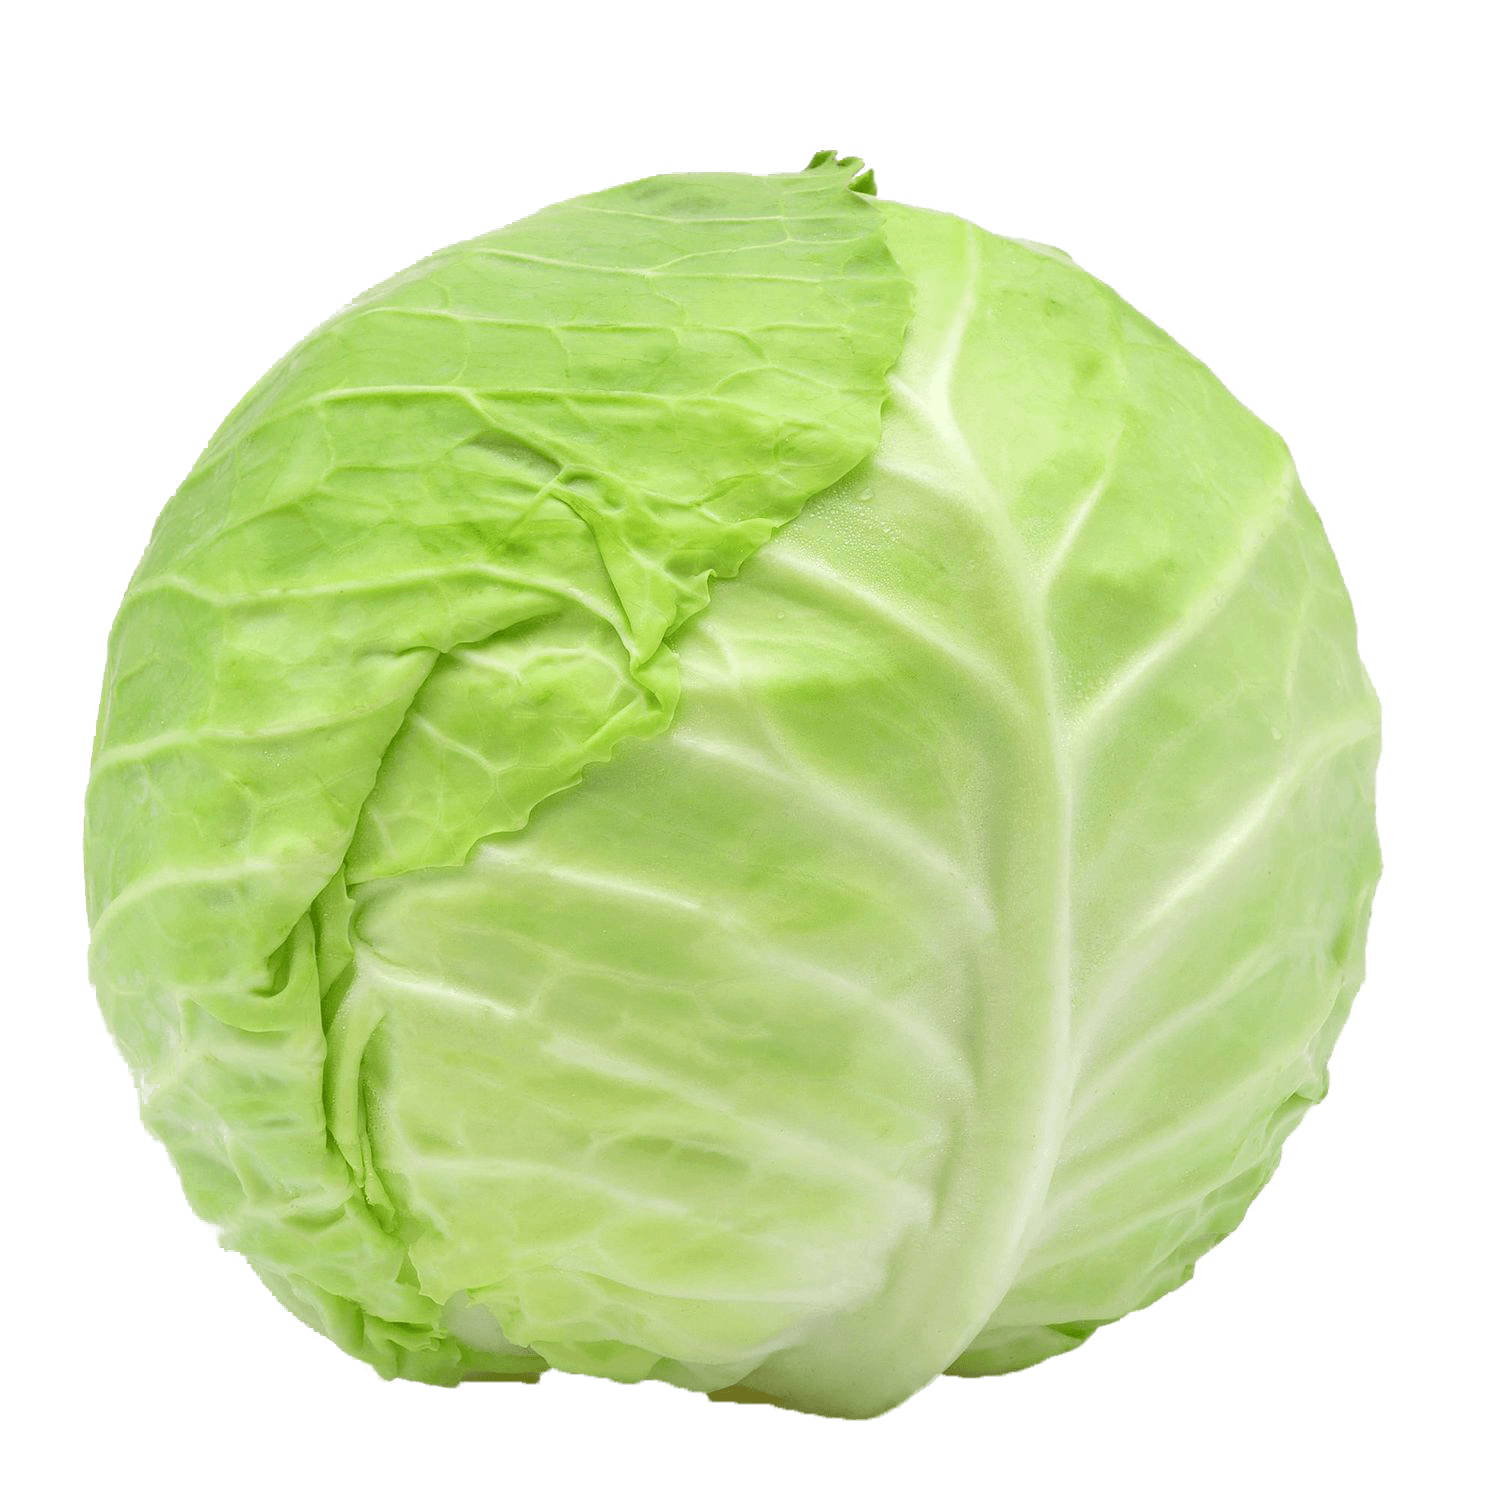 CabbageMan